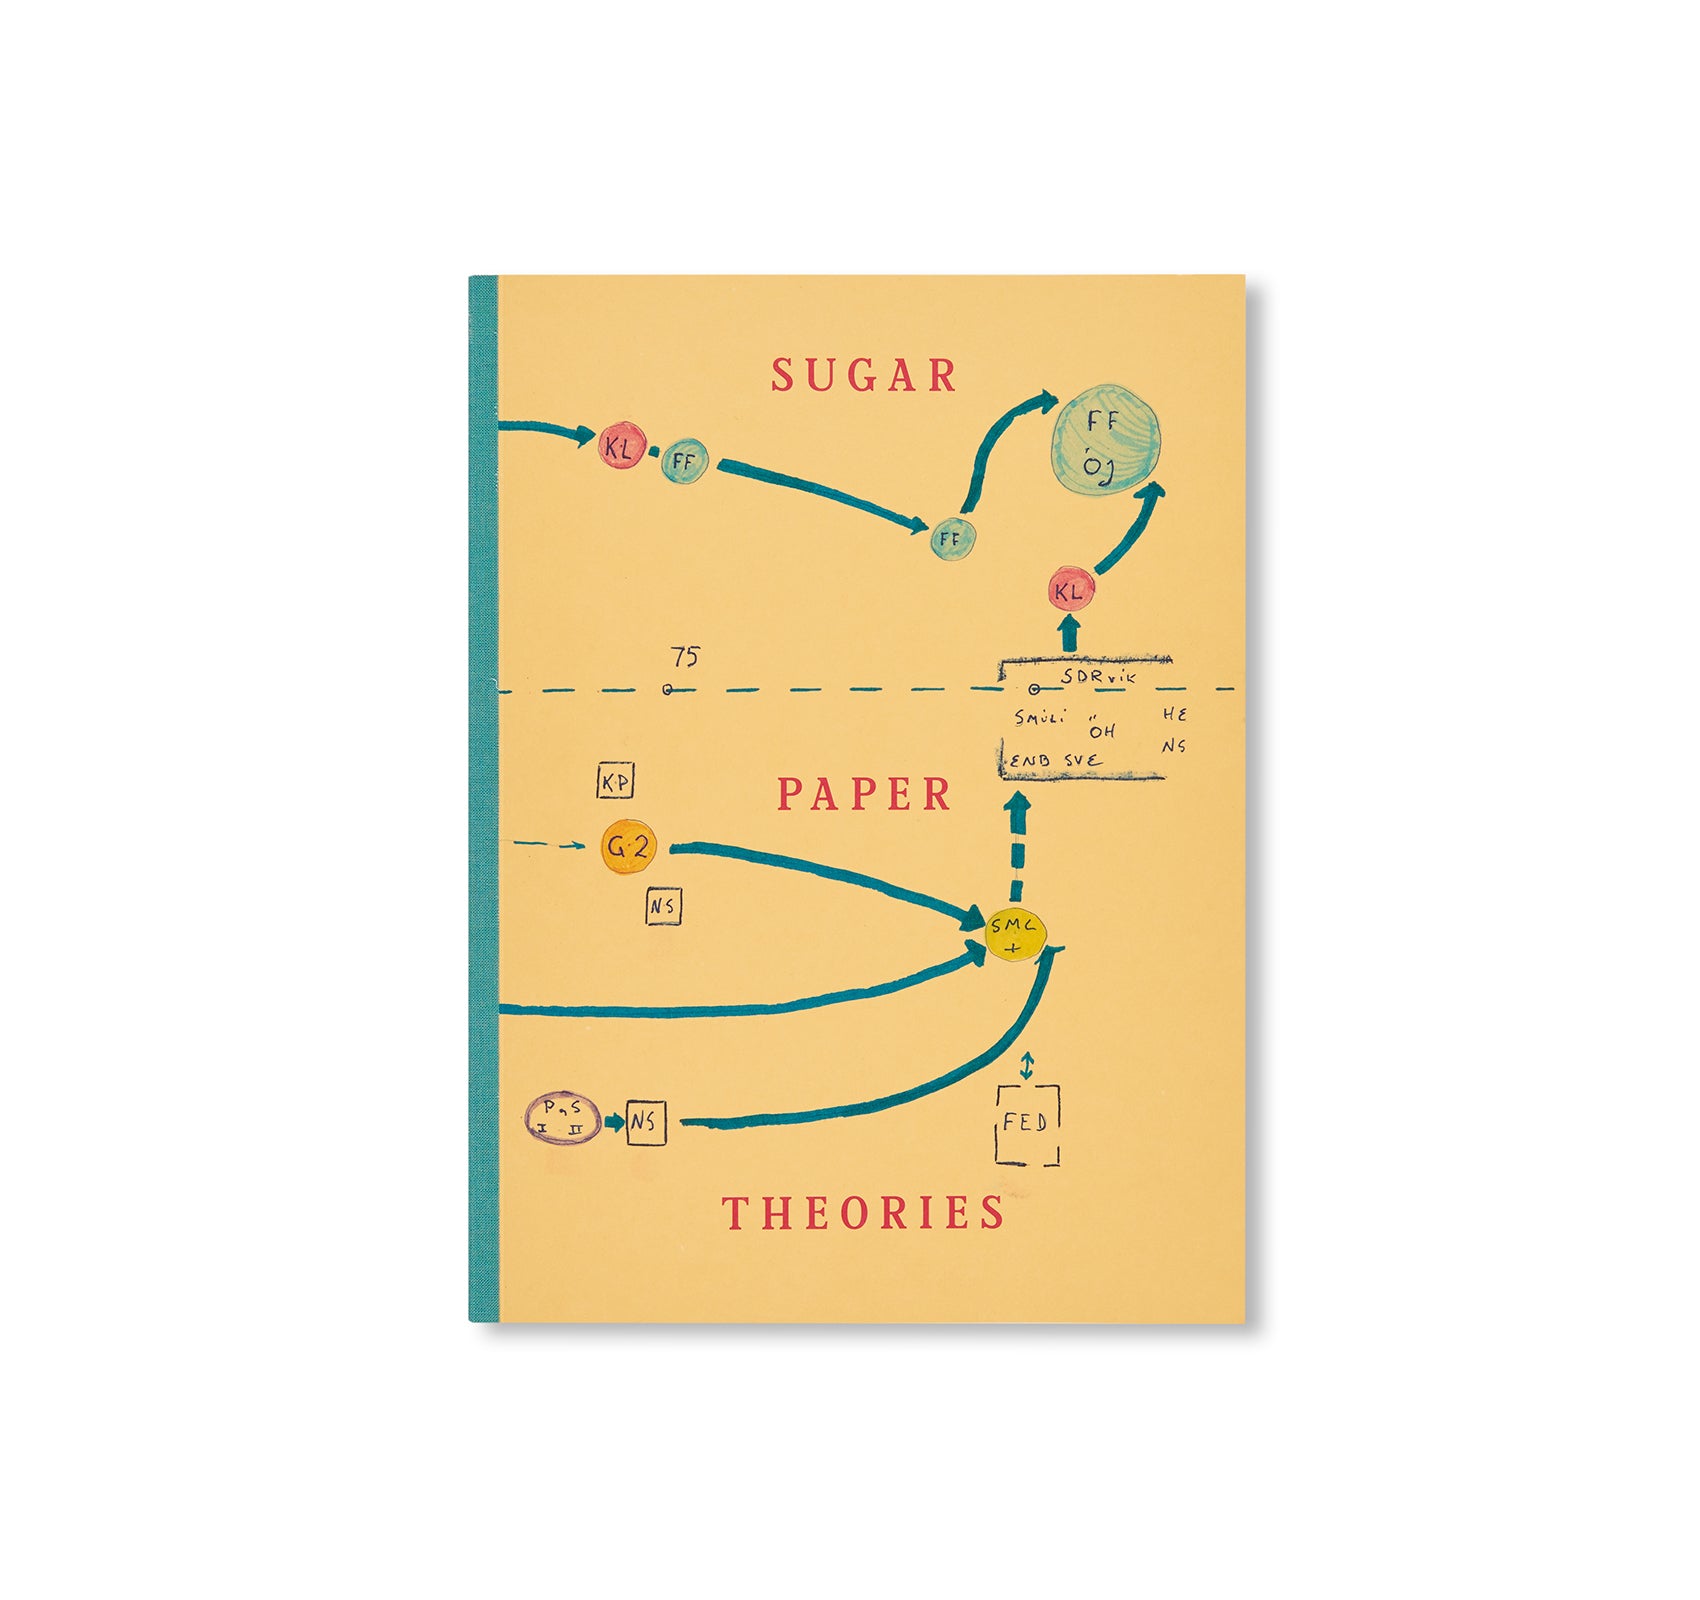 Sugar paper theories / Jack Latham赤々舎スナップショット瀬戸正人